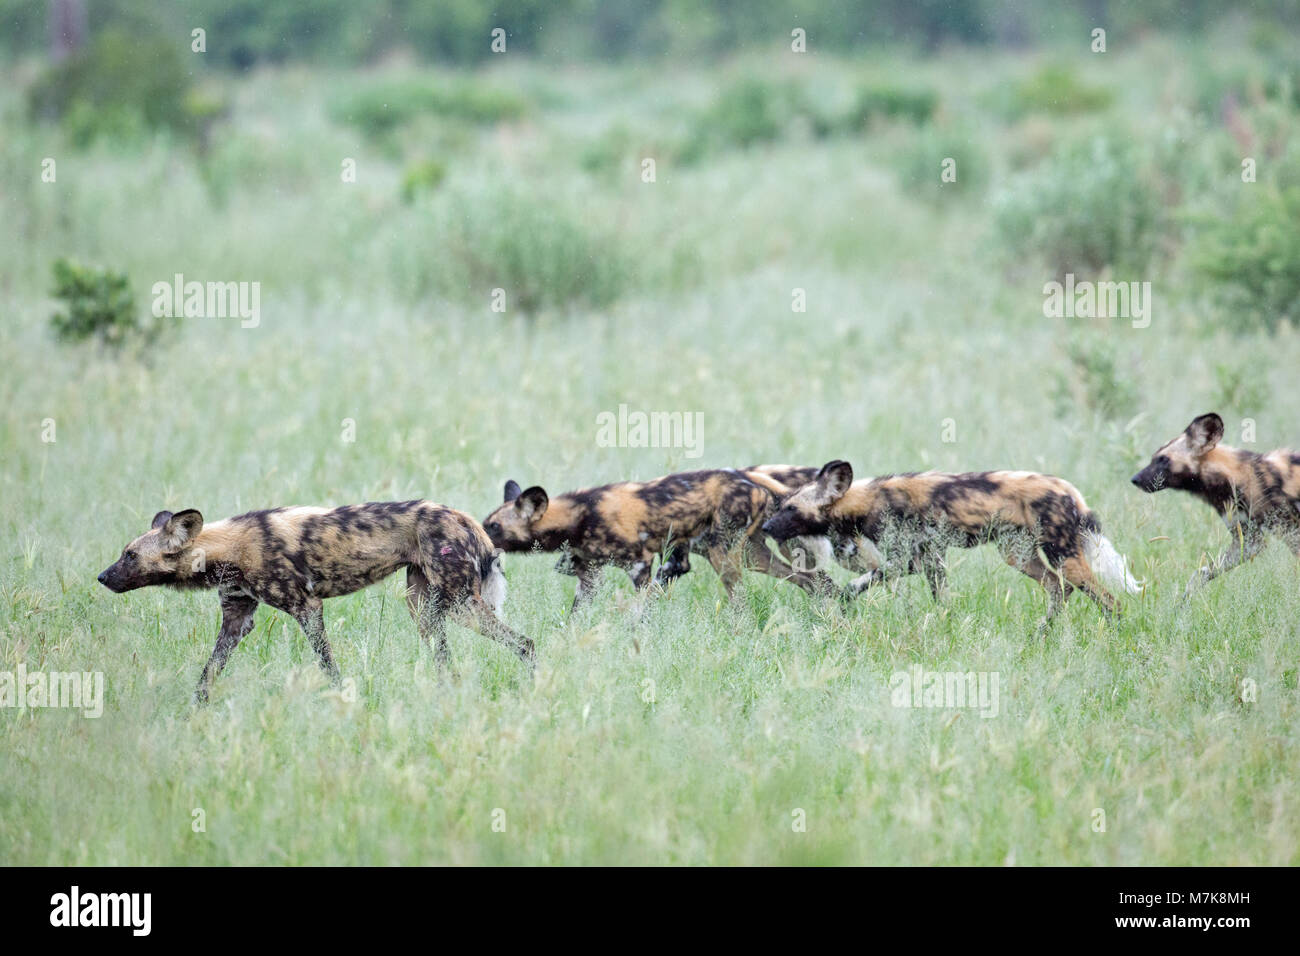 Afrikanische Jagd Hund, Afrikanischer Wildhund, oder gemalten Hund oder Wolf, lackiert (Lycaon pictus). Pack Mitglieder positionieren sich um Bush Abdeckung, bereit, t Stockfoto